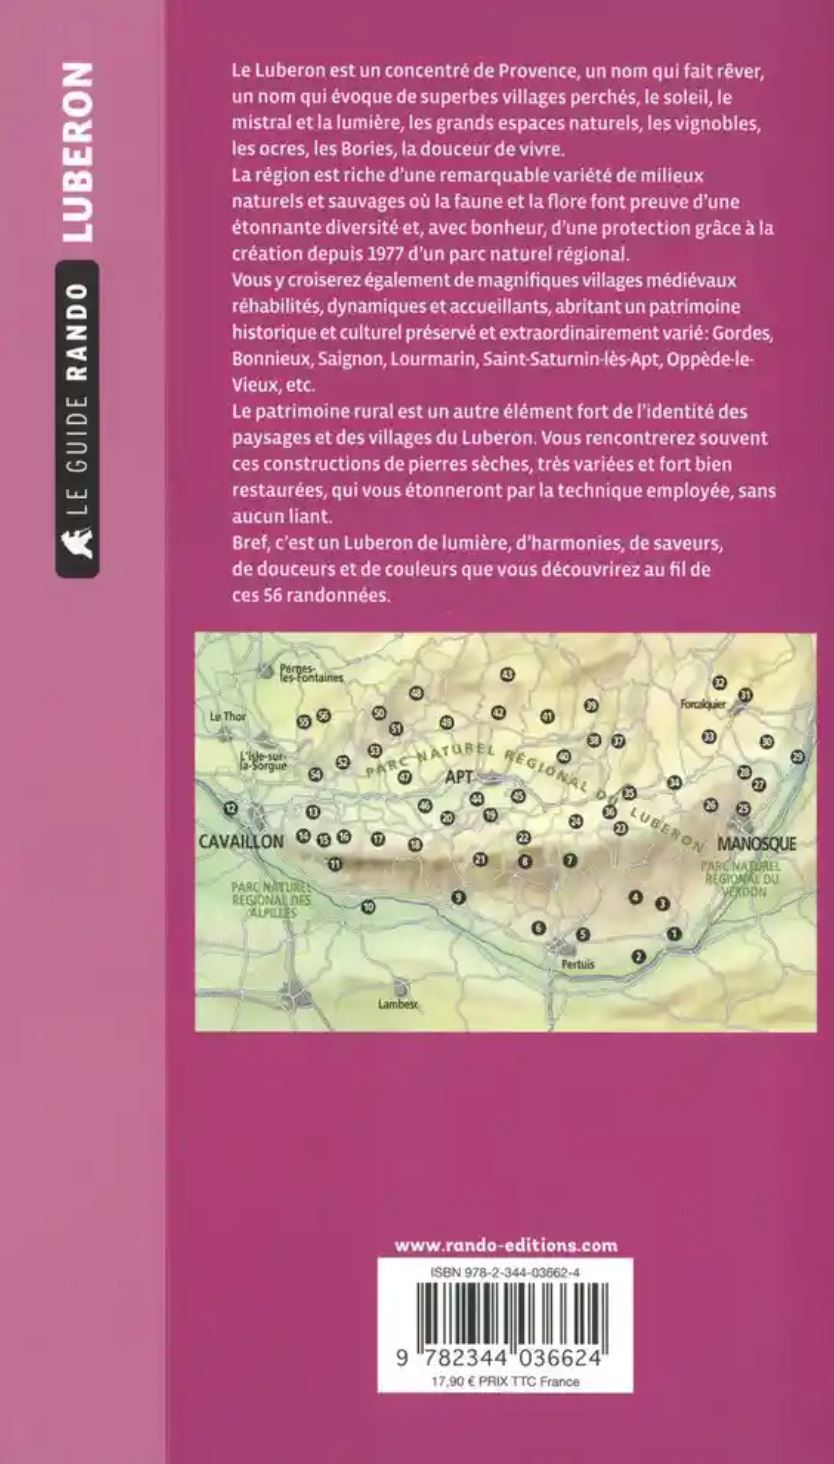 Le Guide Rando - Luberon | Rando Editions guide de randonnée Rando Editions 